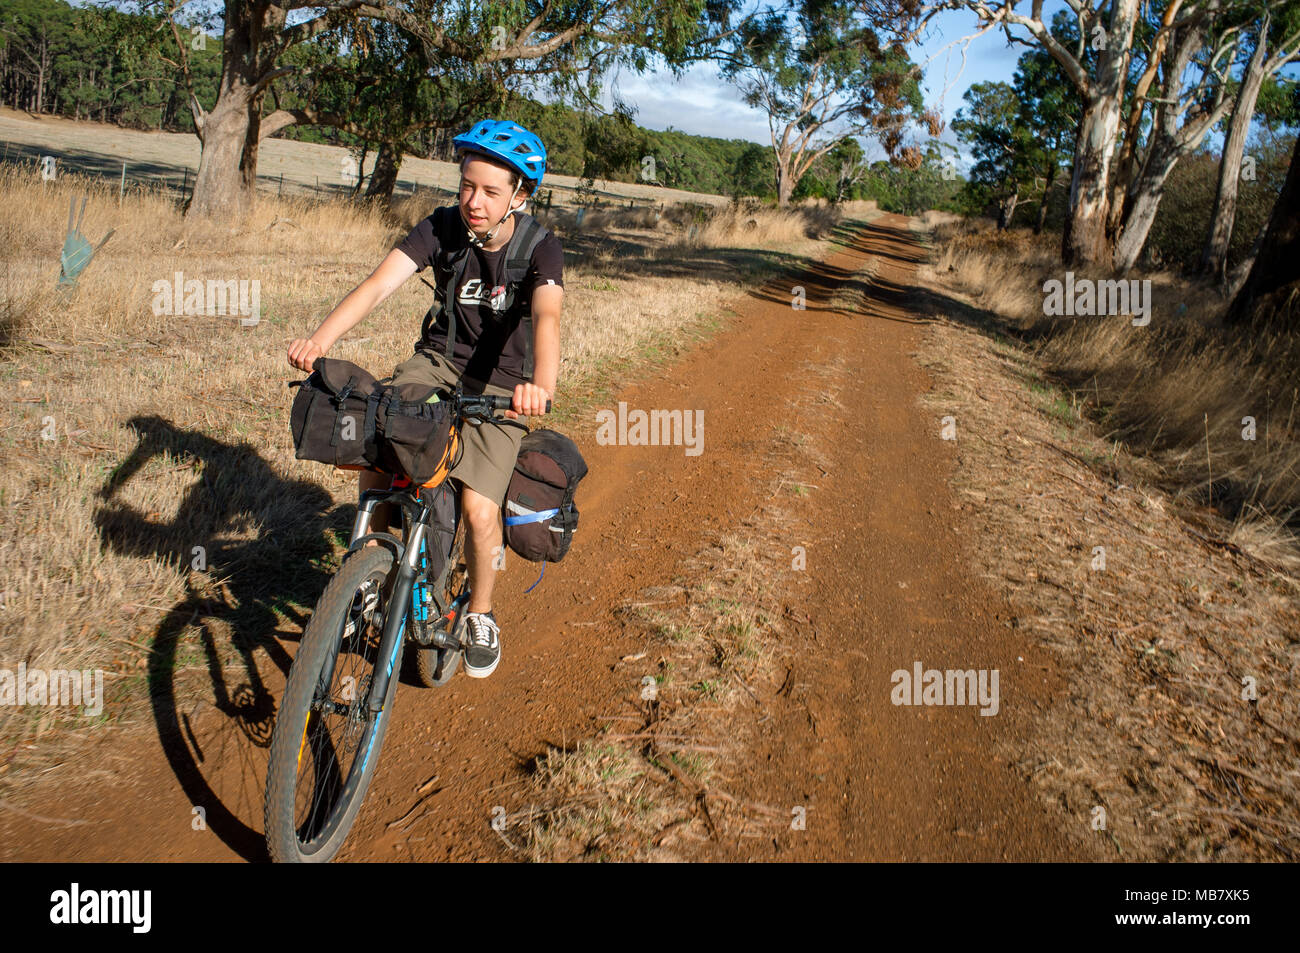 Ein Teenager reitet ein Mountainbike Fahrrad Verpackung Abenteuer in Australien. Stockfoto